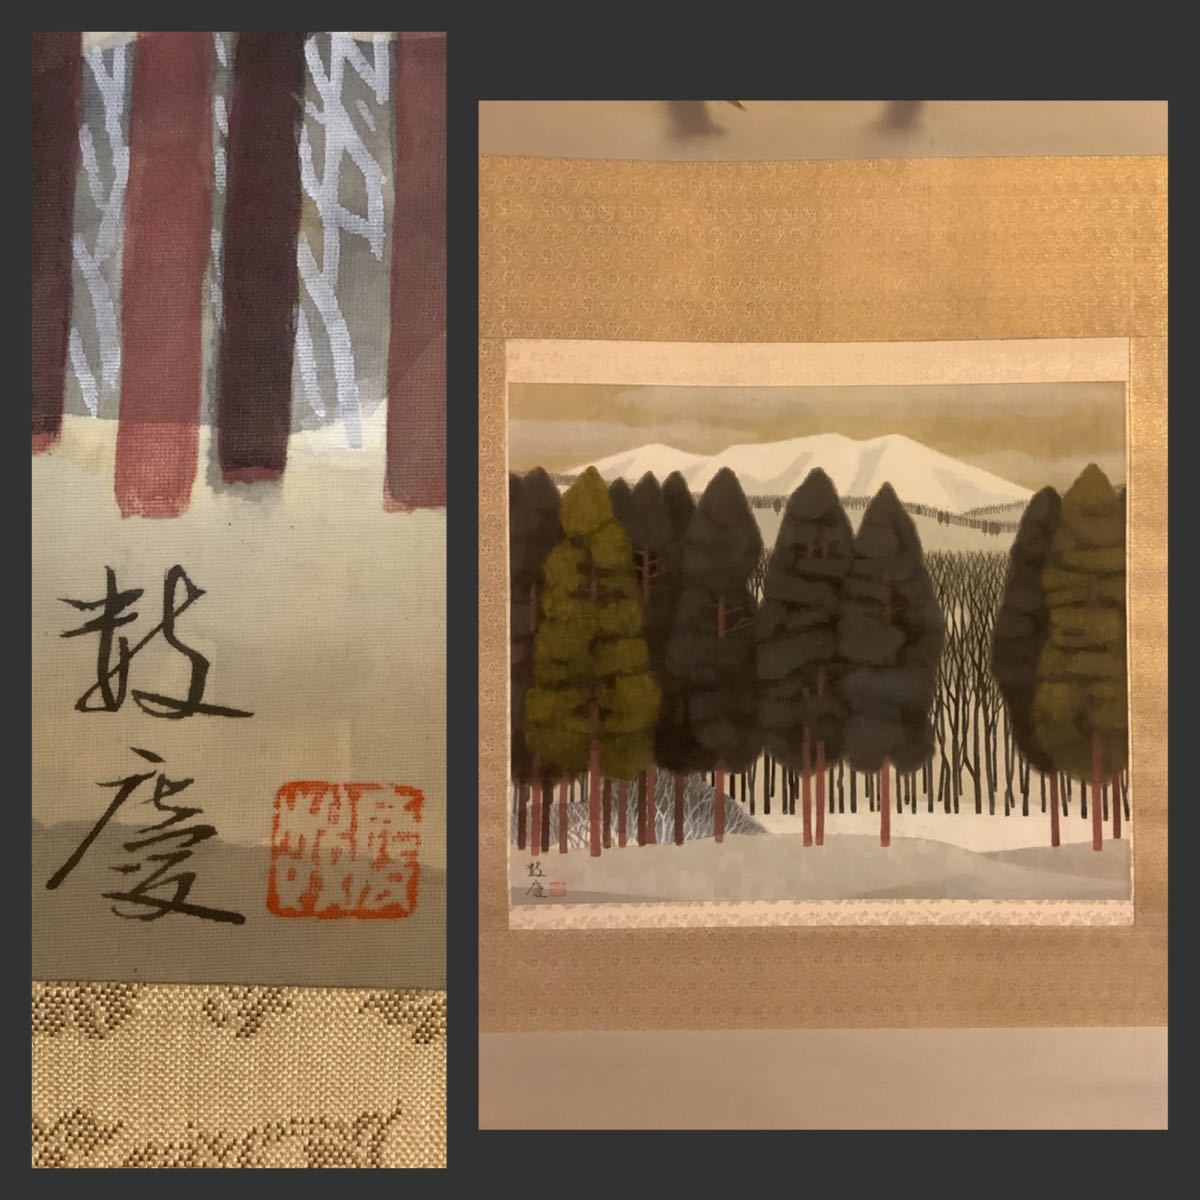 [نسخة] تمرير معلق Fe652BL [Kazukei Higasa Snow Peak] كتاب حريري ملون مكتوب في صندوق/لوحة يابانية رسم المناظر الطبيعية اليابان Bijutsuin Doujin رسم المناظر الطبيعية, تلوين, اللوحة اليابانية, منظر جمالي, فوجيتسو